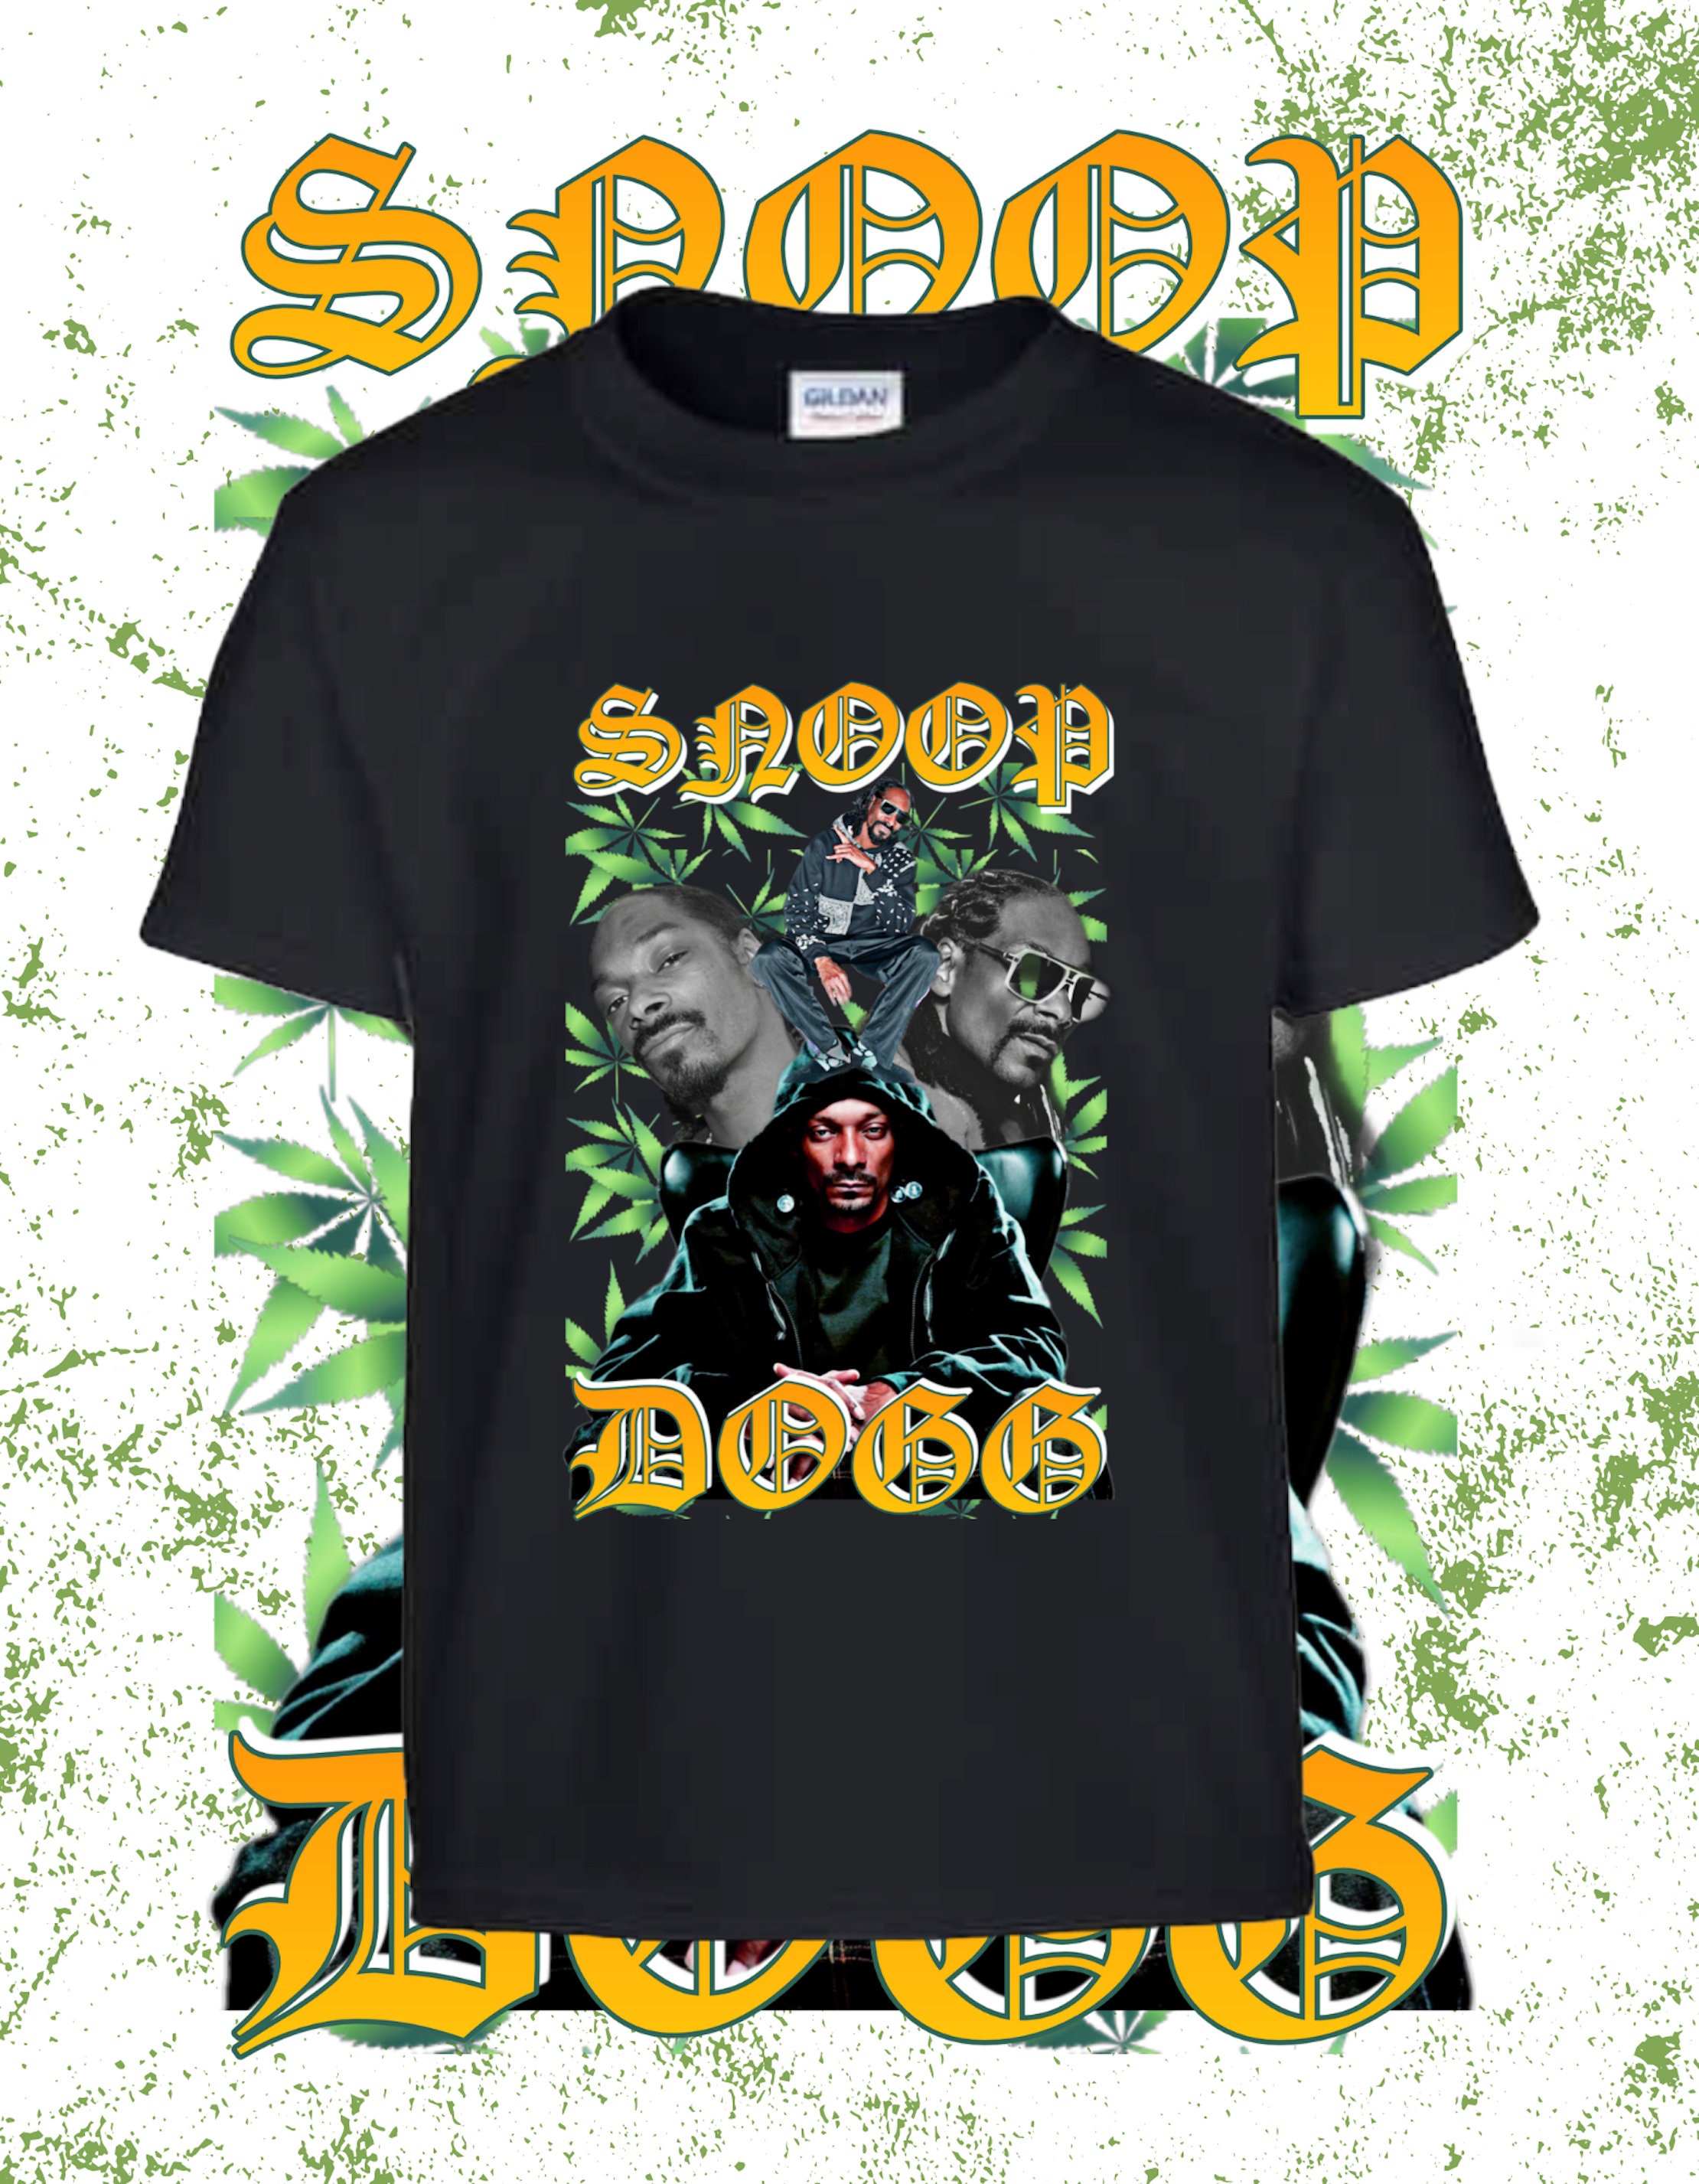 Snoop Dogg T-Shirt DZT27